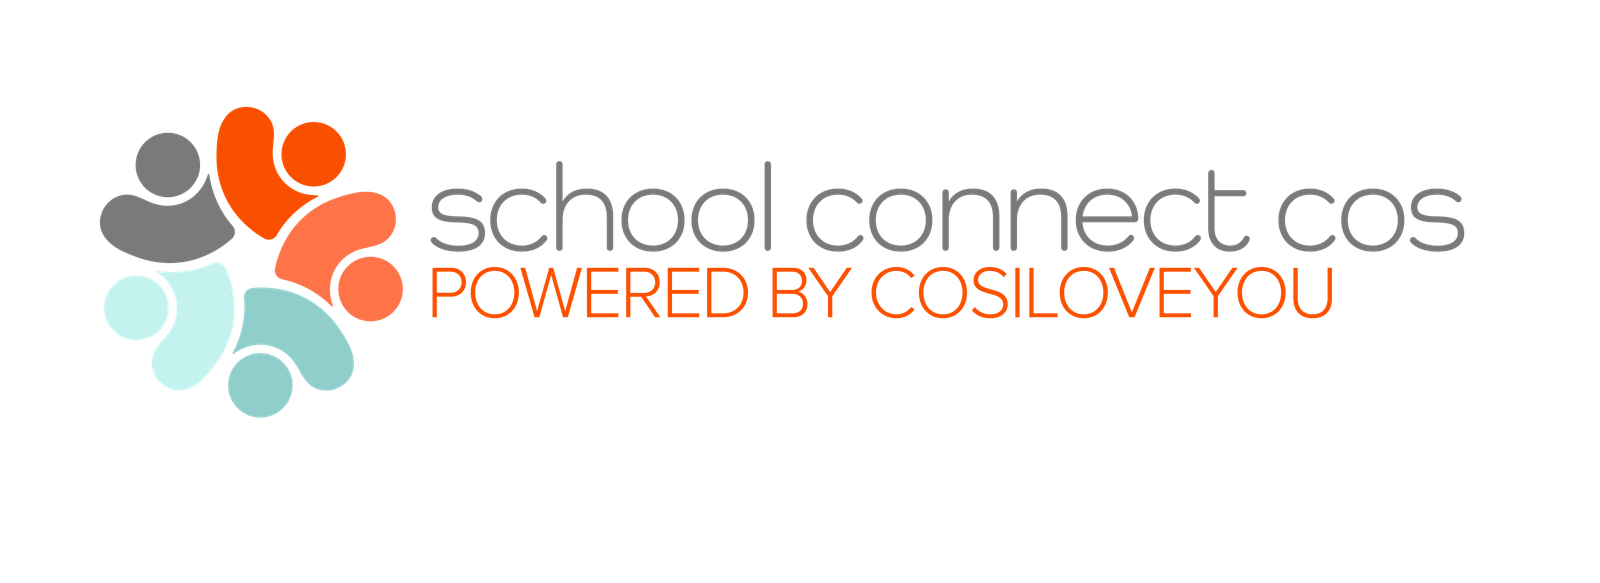 schoolconnectcos.com